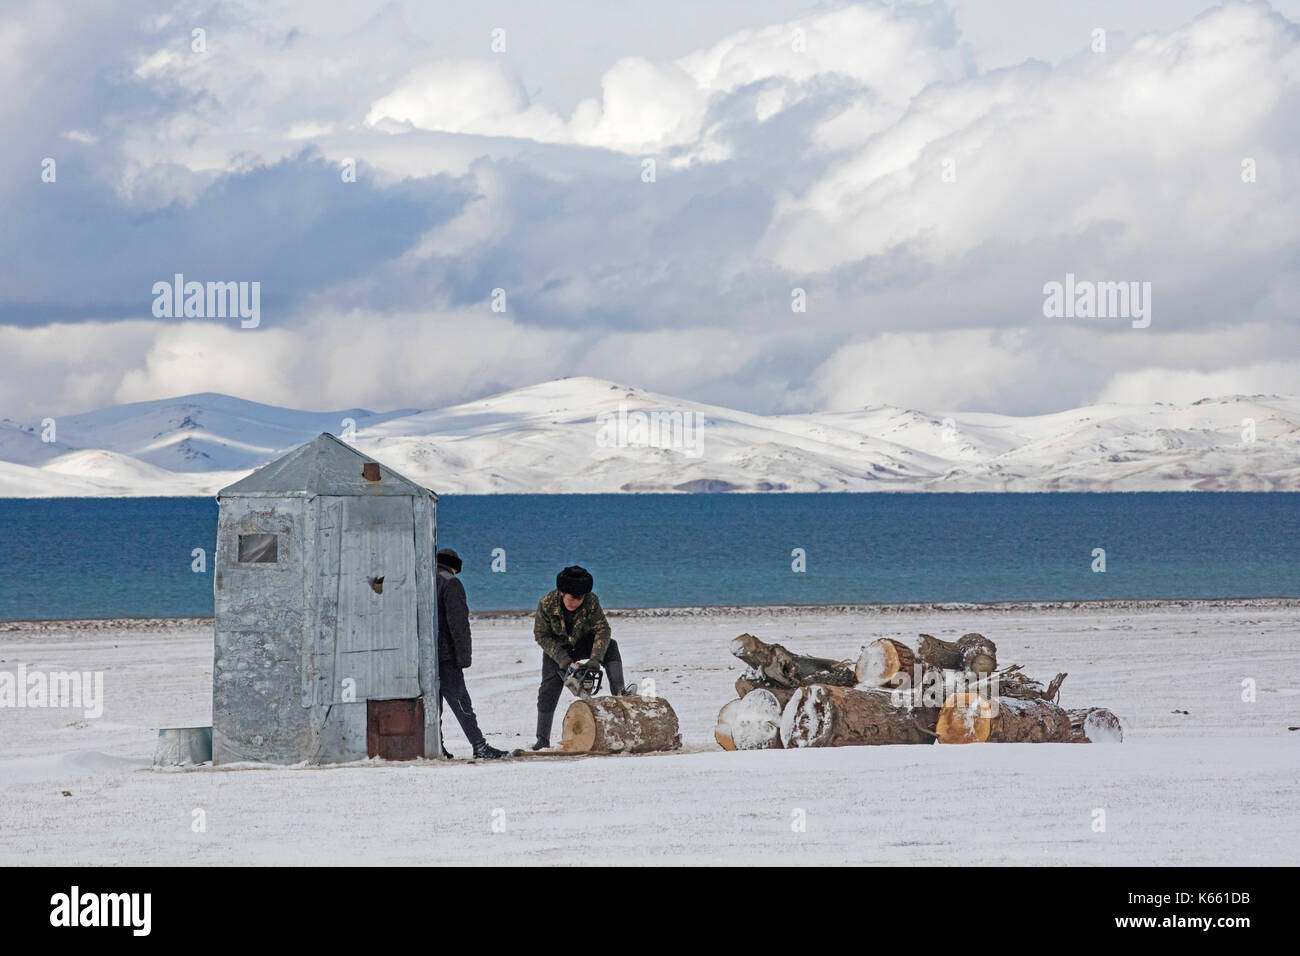 Des hommes kirghizes coupent du bois avec une tronçonneuse dans la neige le long du lac Song Kul / Song Kol dans les montagnes Tian Shan, province de Naryn, Kirghizistan Banque D'Images